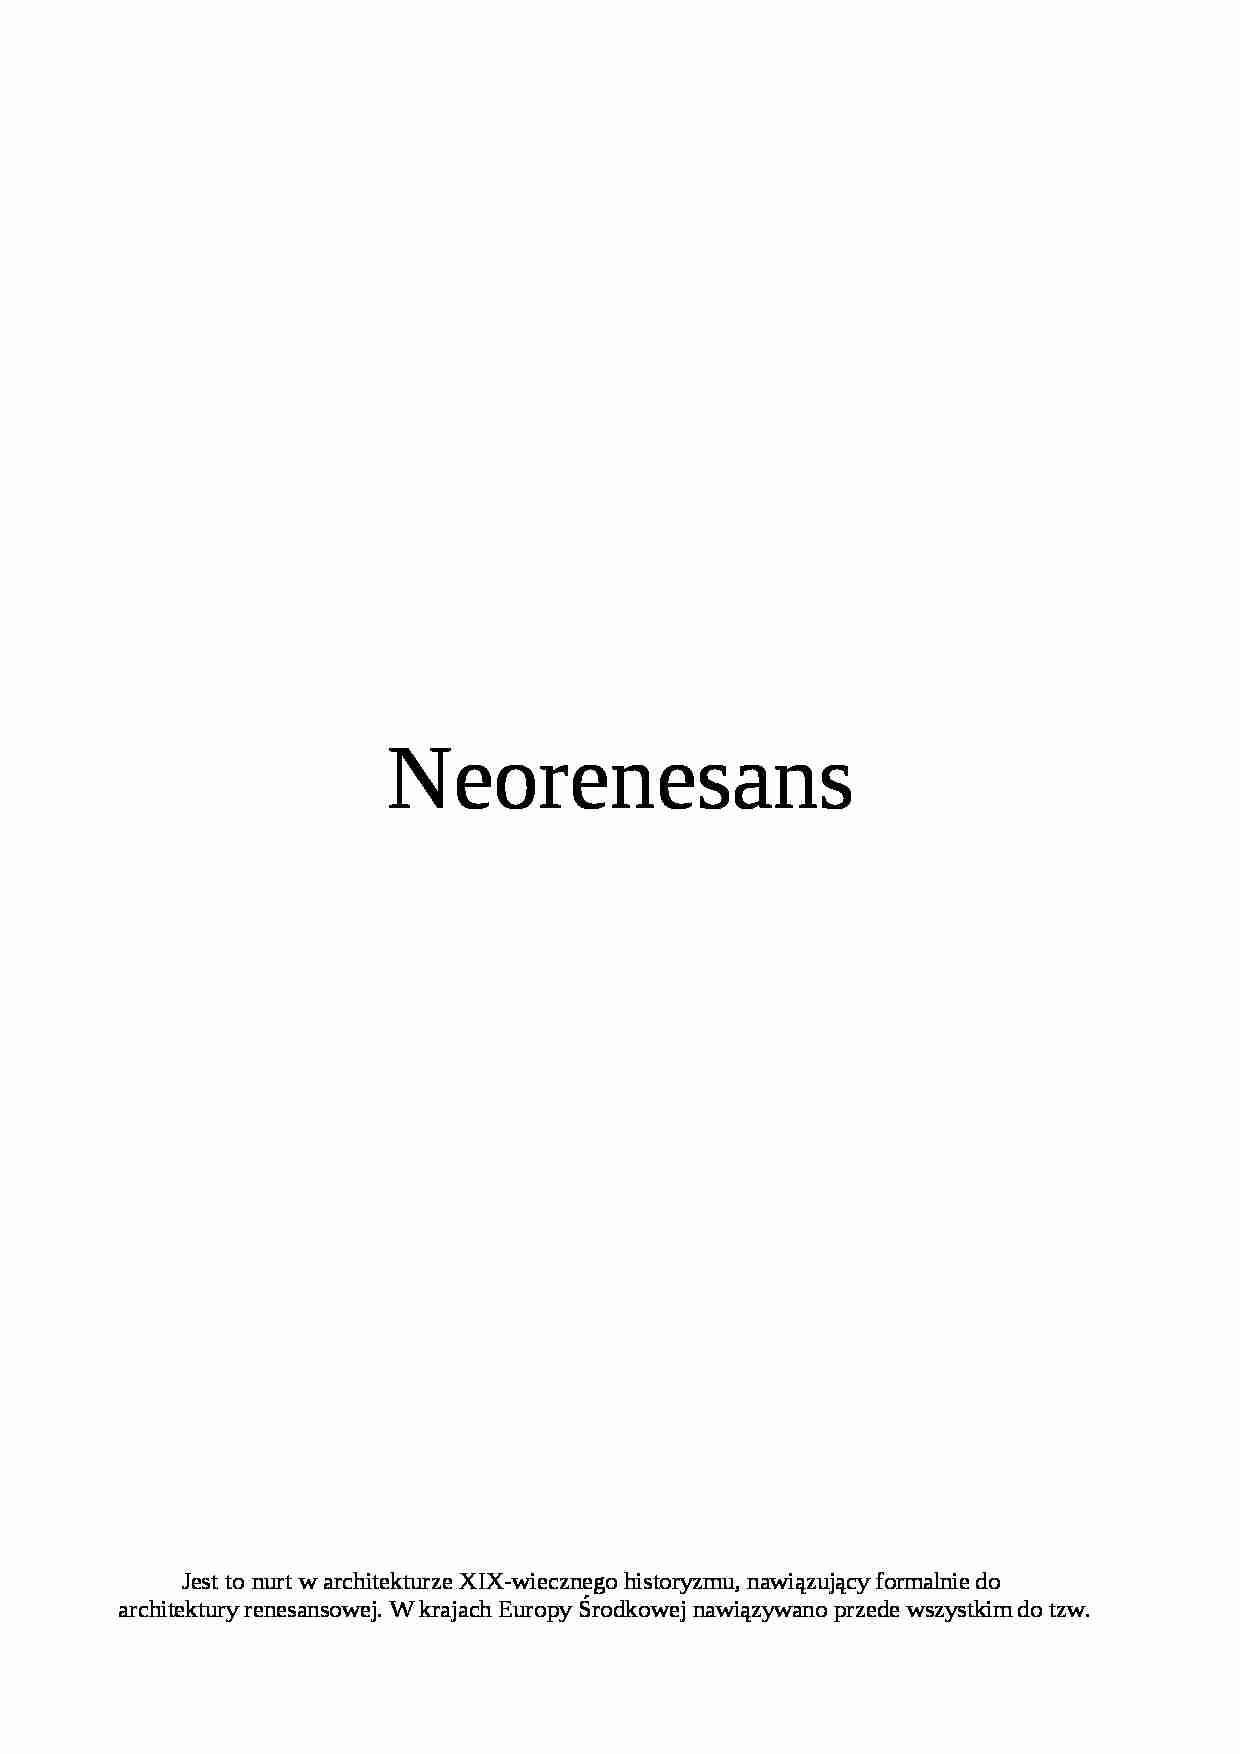 Neorenesans - omówienie zagadnienia - strona 1